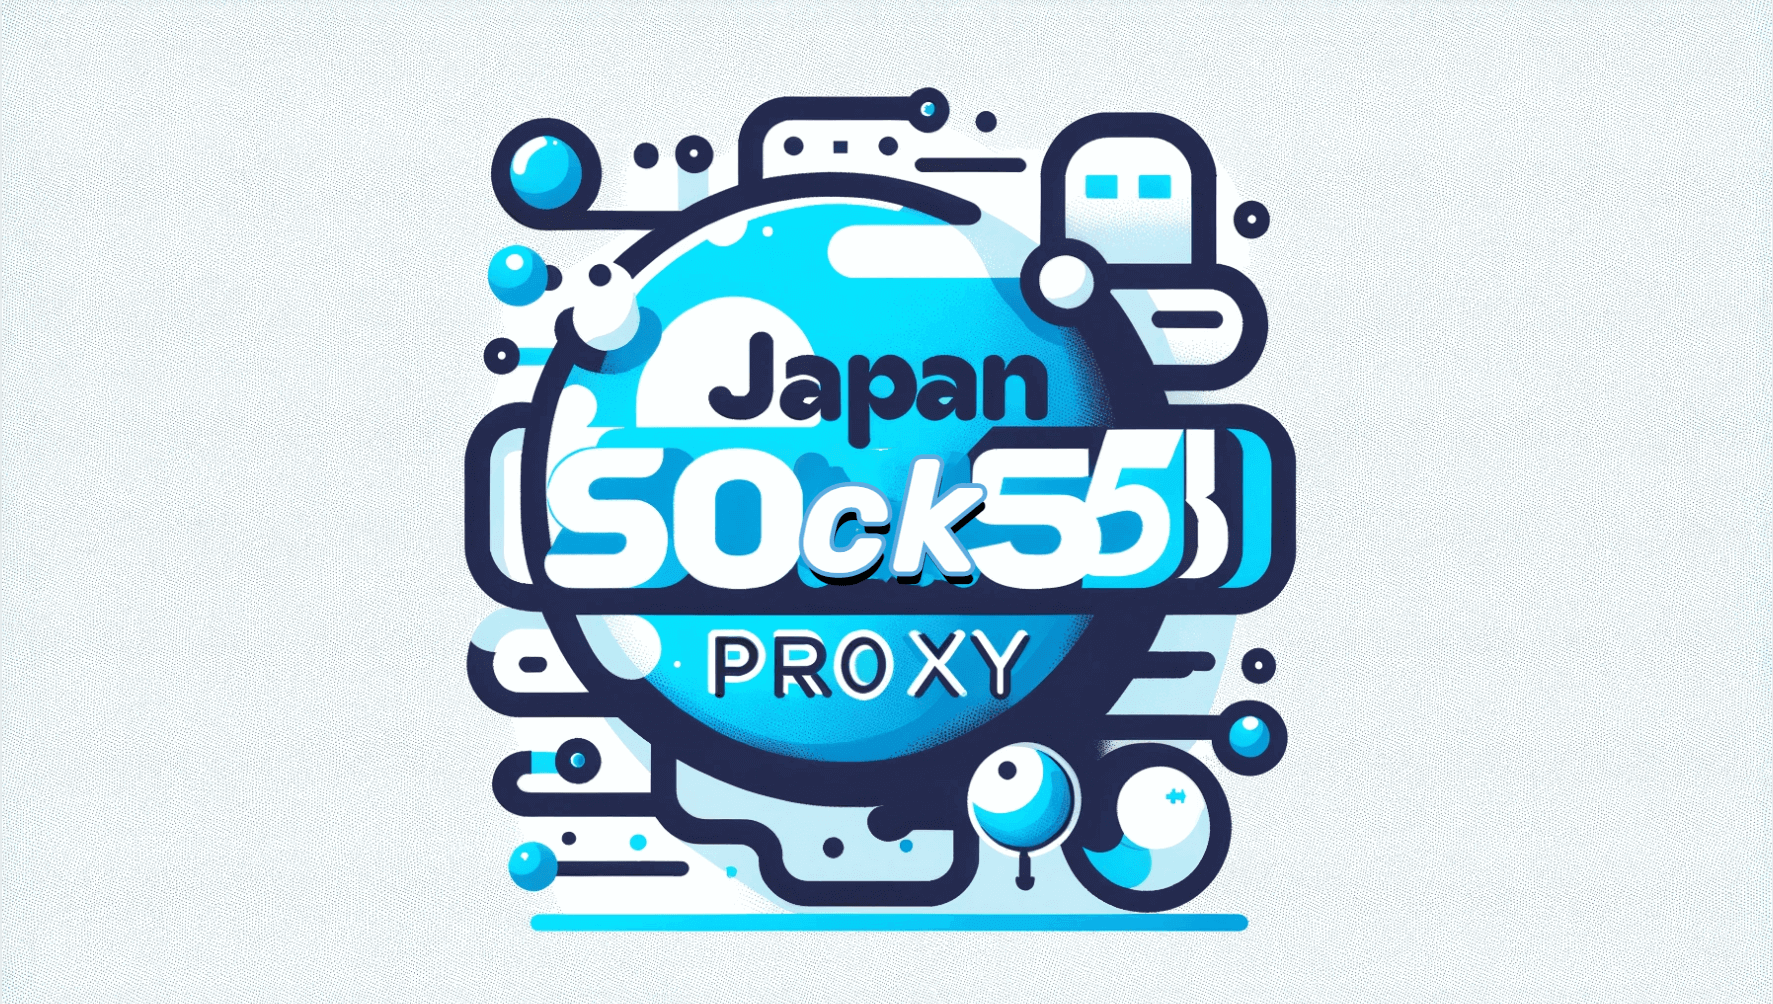 Japan SOCKS5 Proxy Service